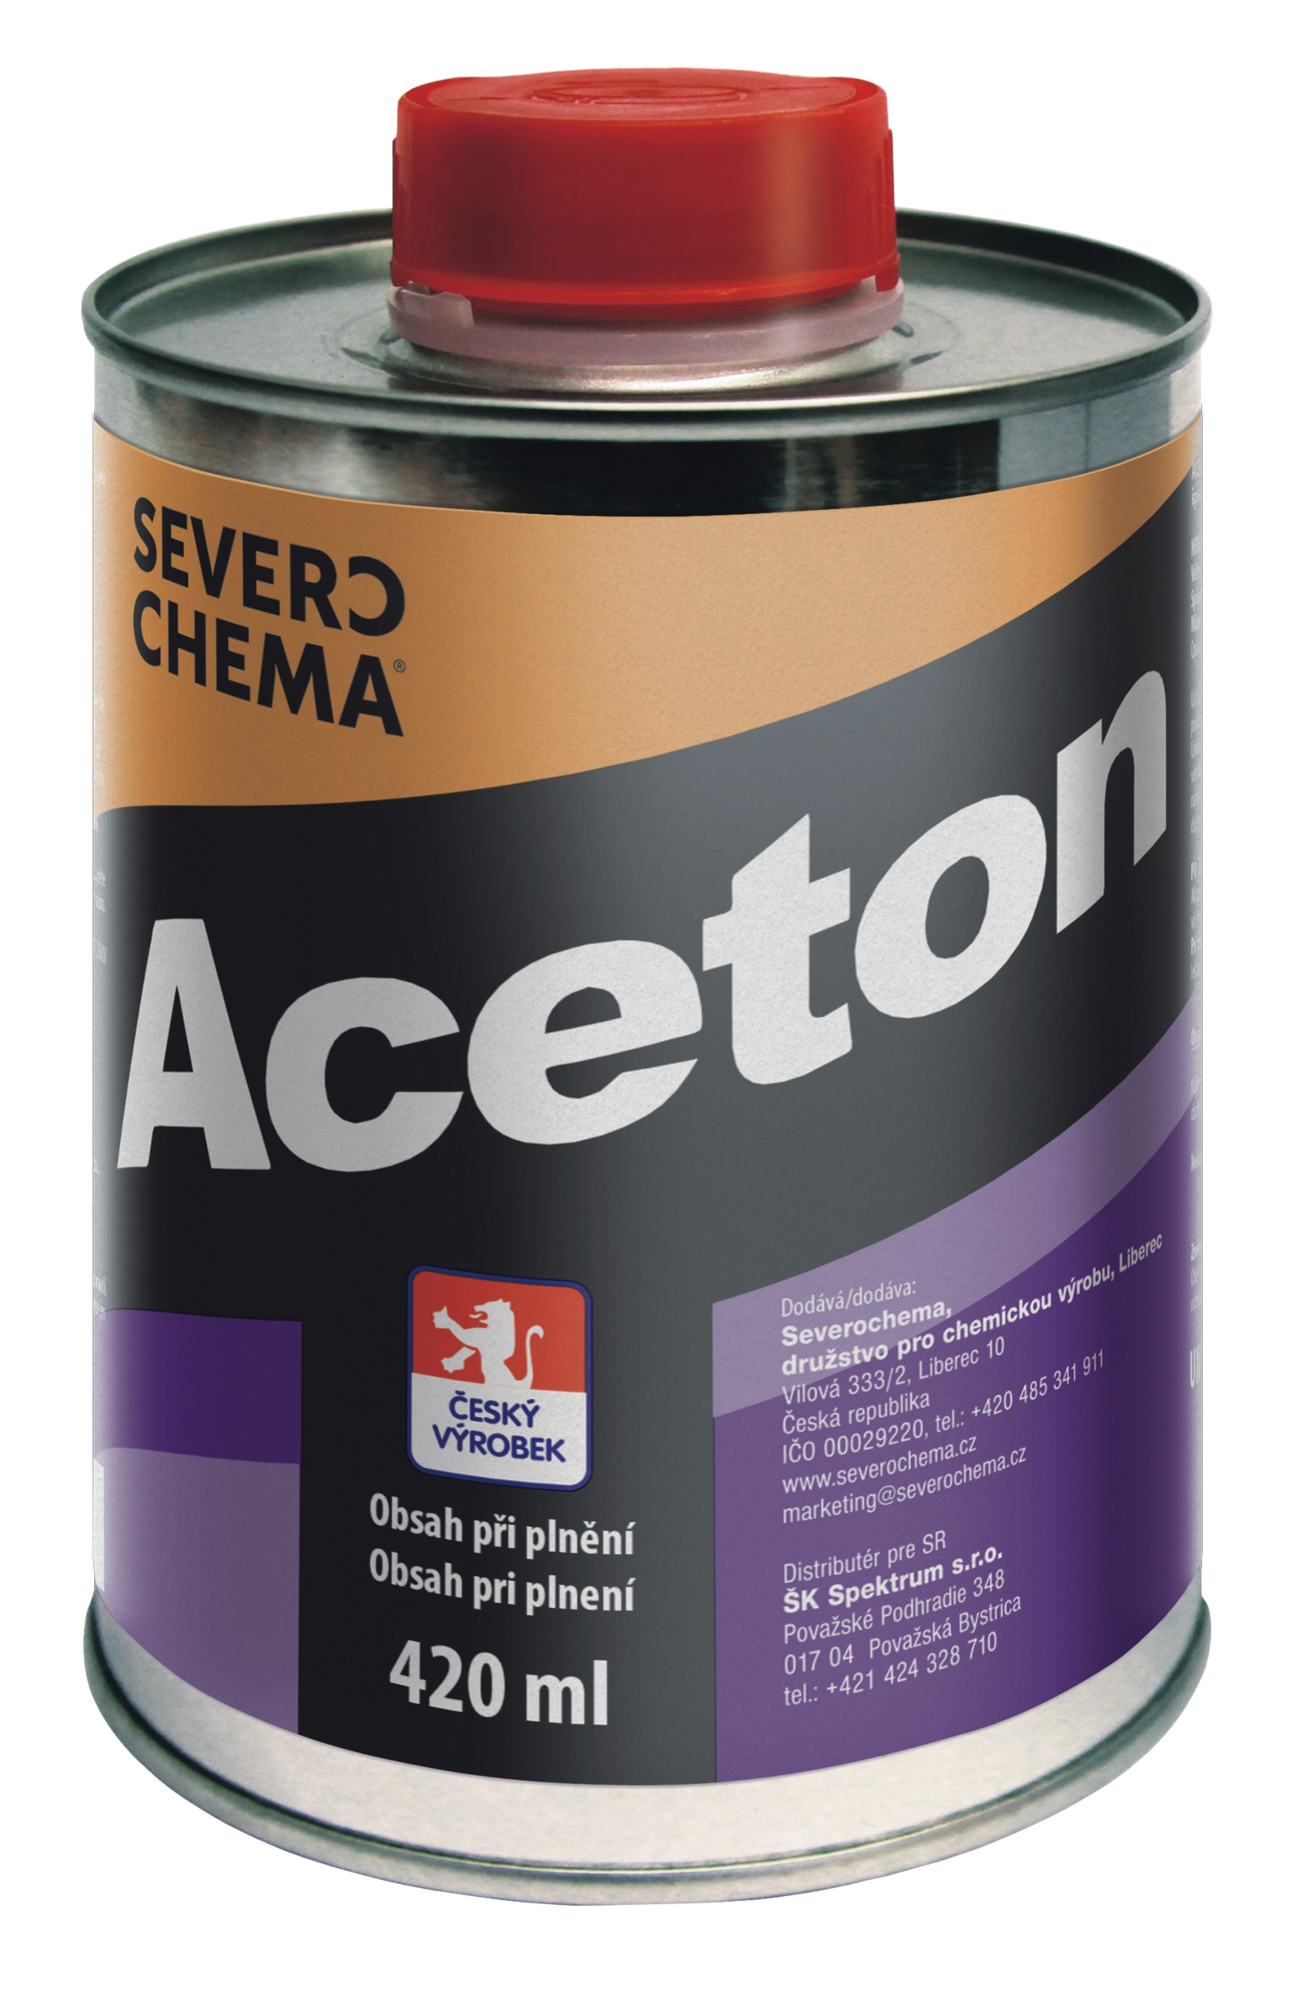 Kde se používá aceton?